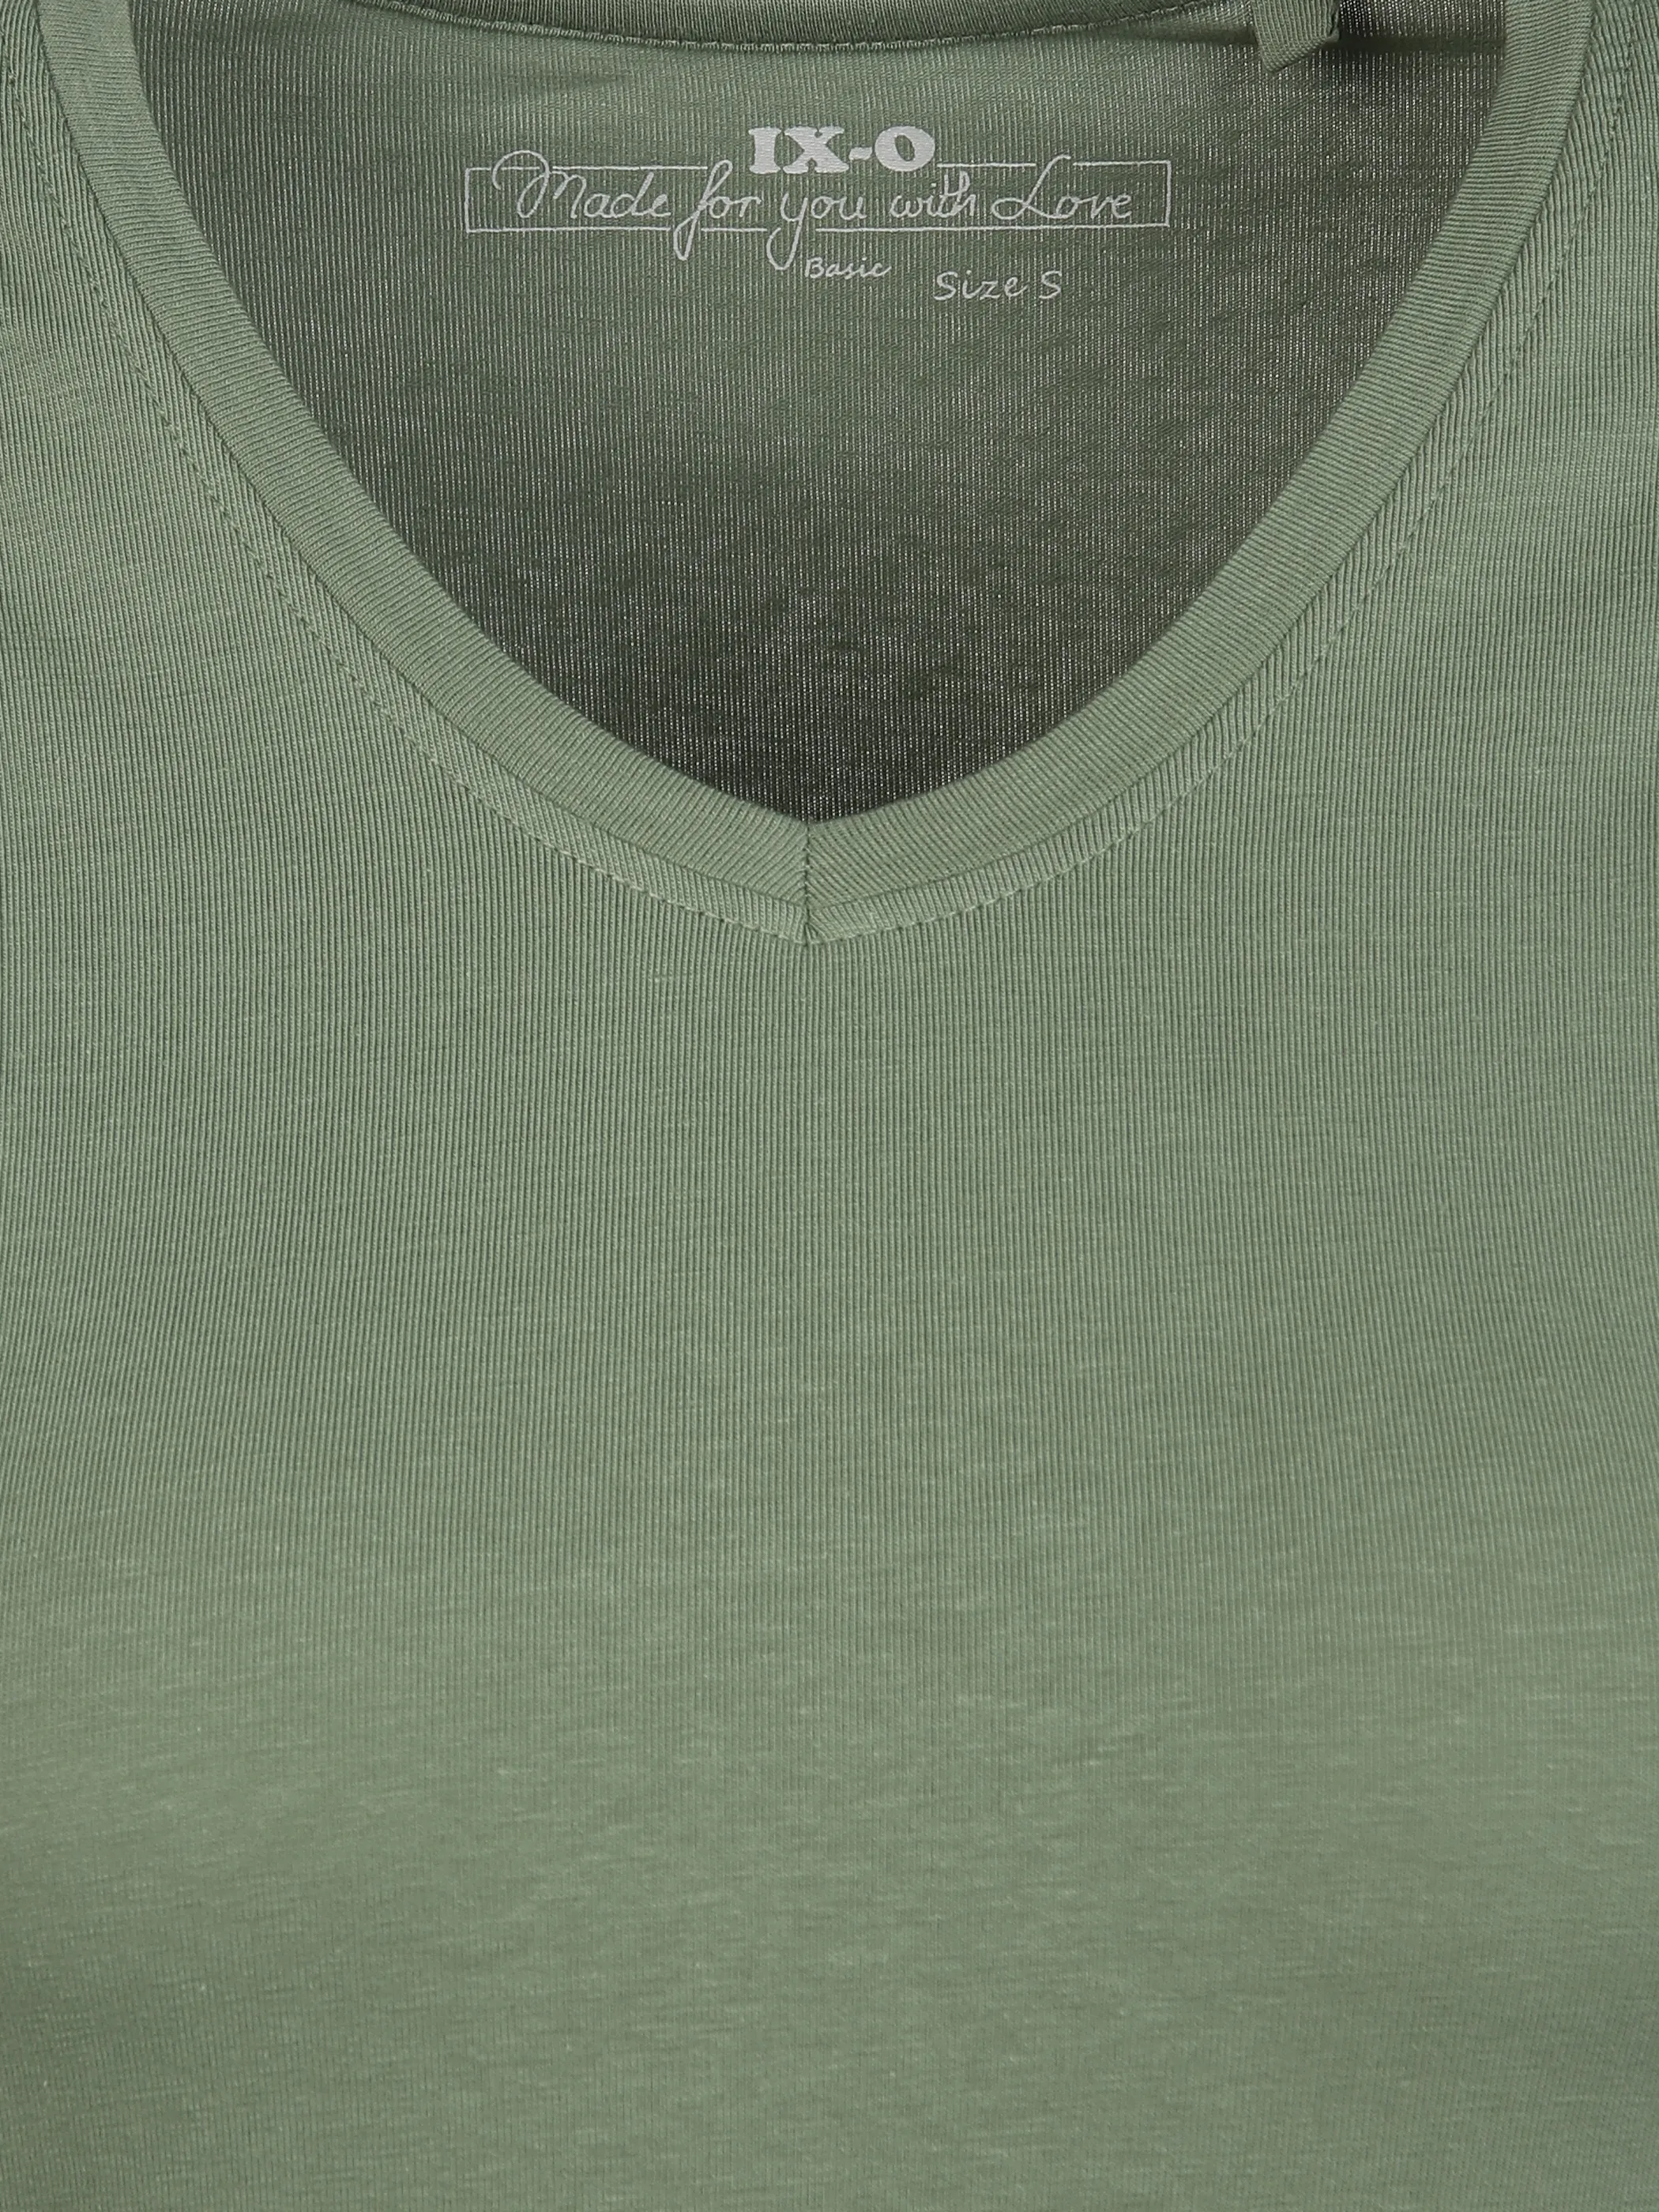 IX-O YF-Da-T-Shirt, Basic Grün 889940 17-6323TCX 3